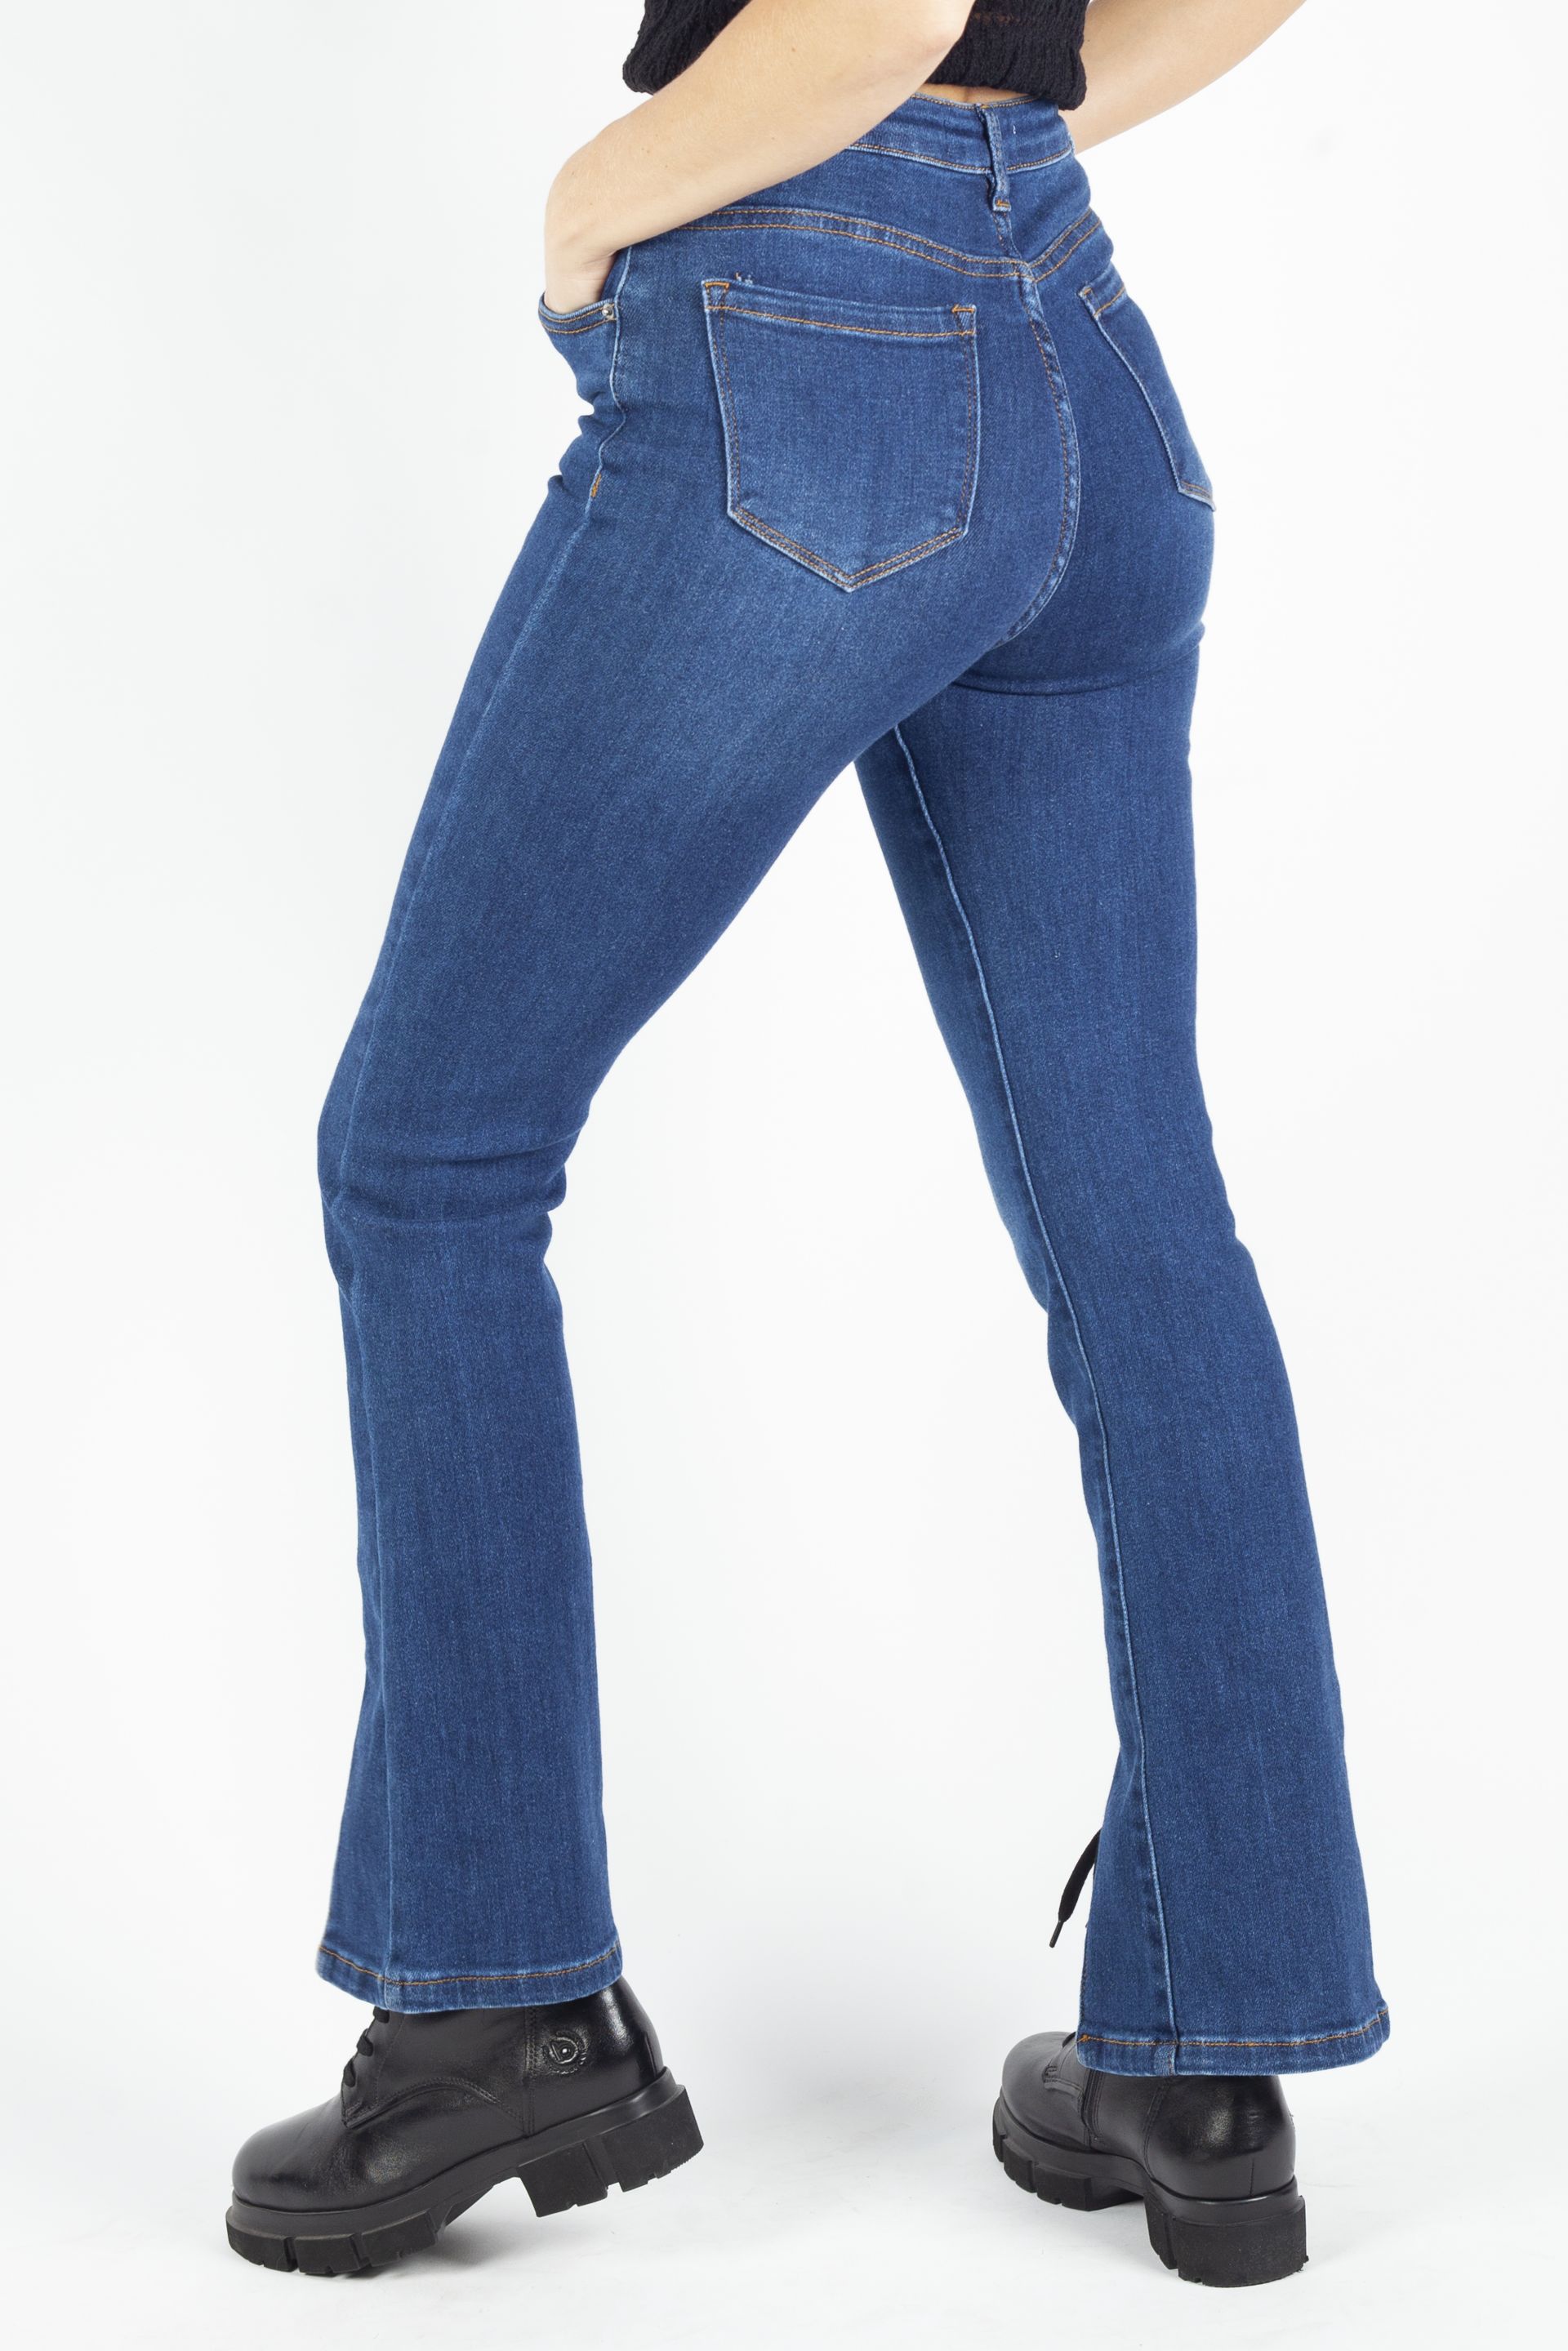 Jeans VS MISS VS7539